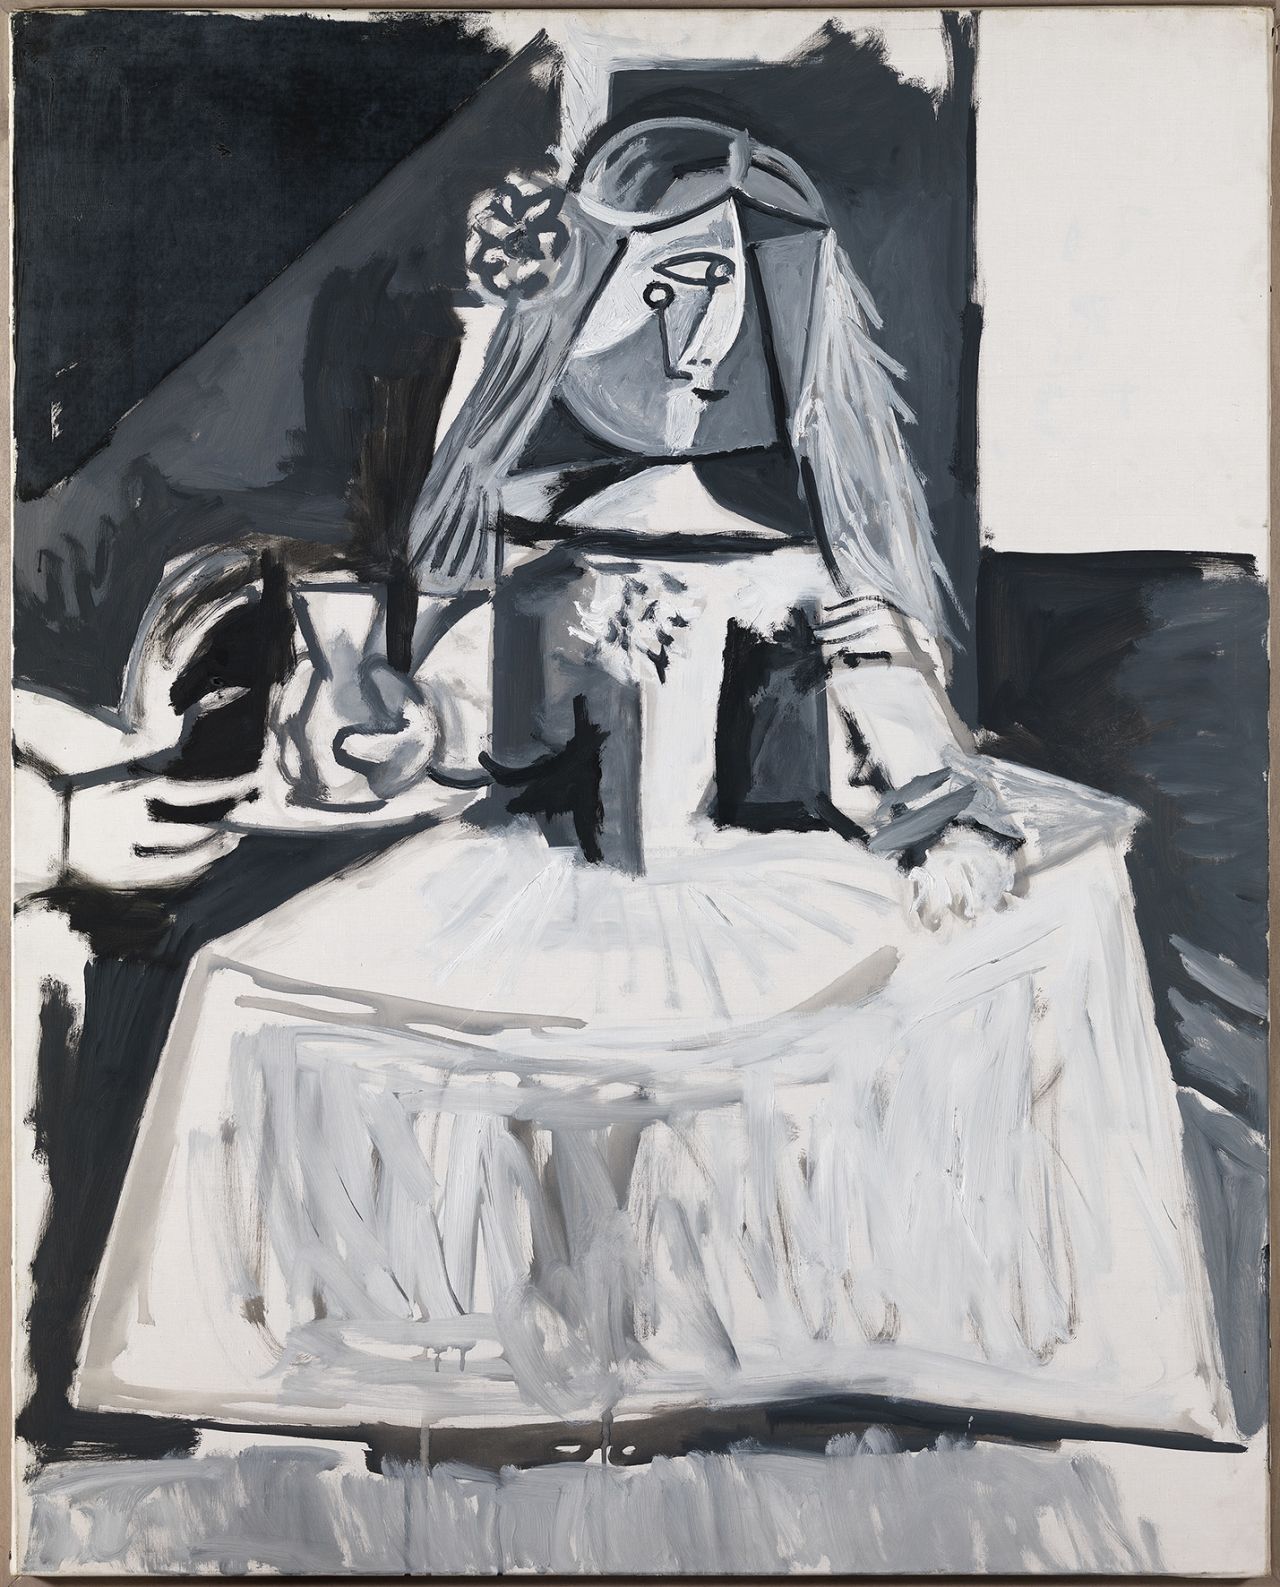 Pablo Picasso, "Las Meninas (Infanta Margarita María)" (1957).